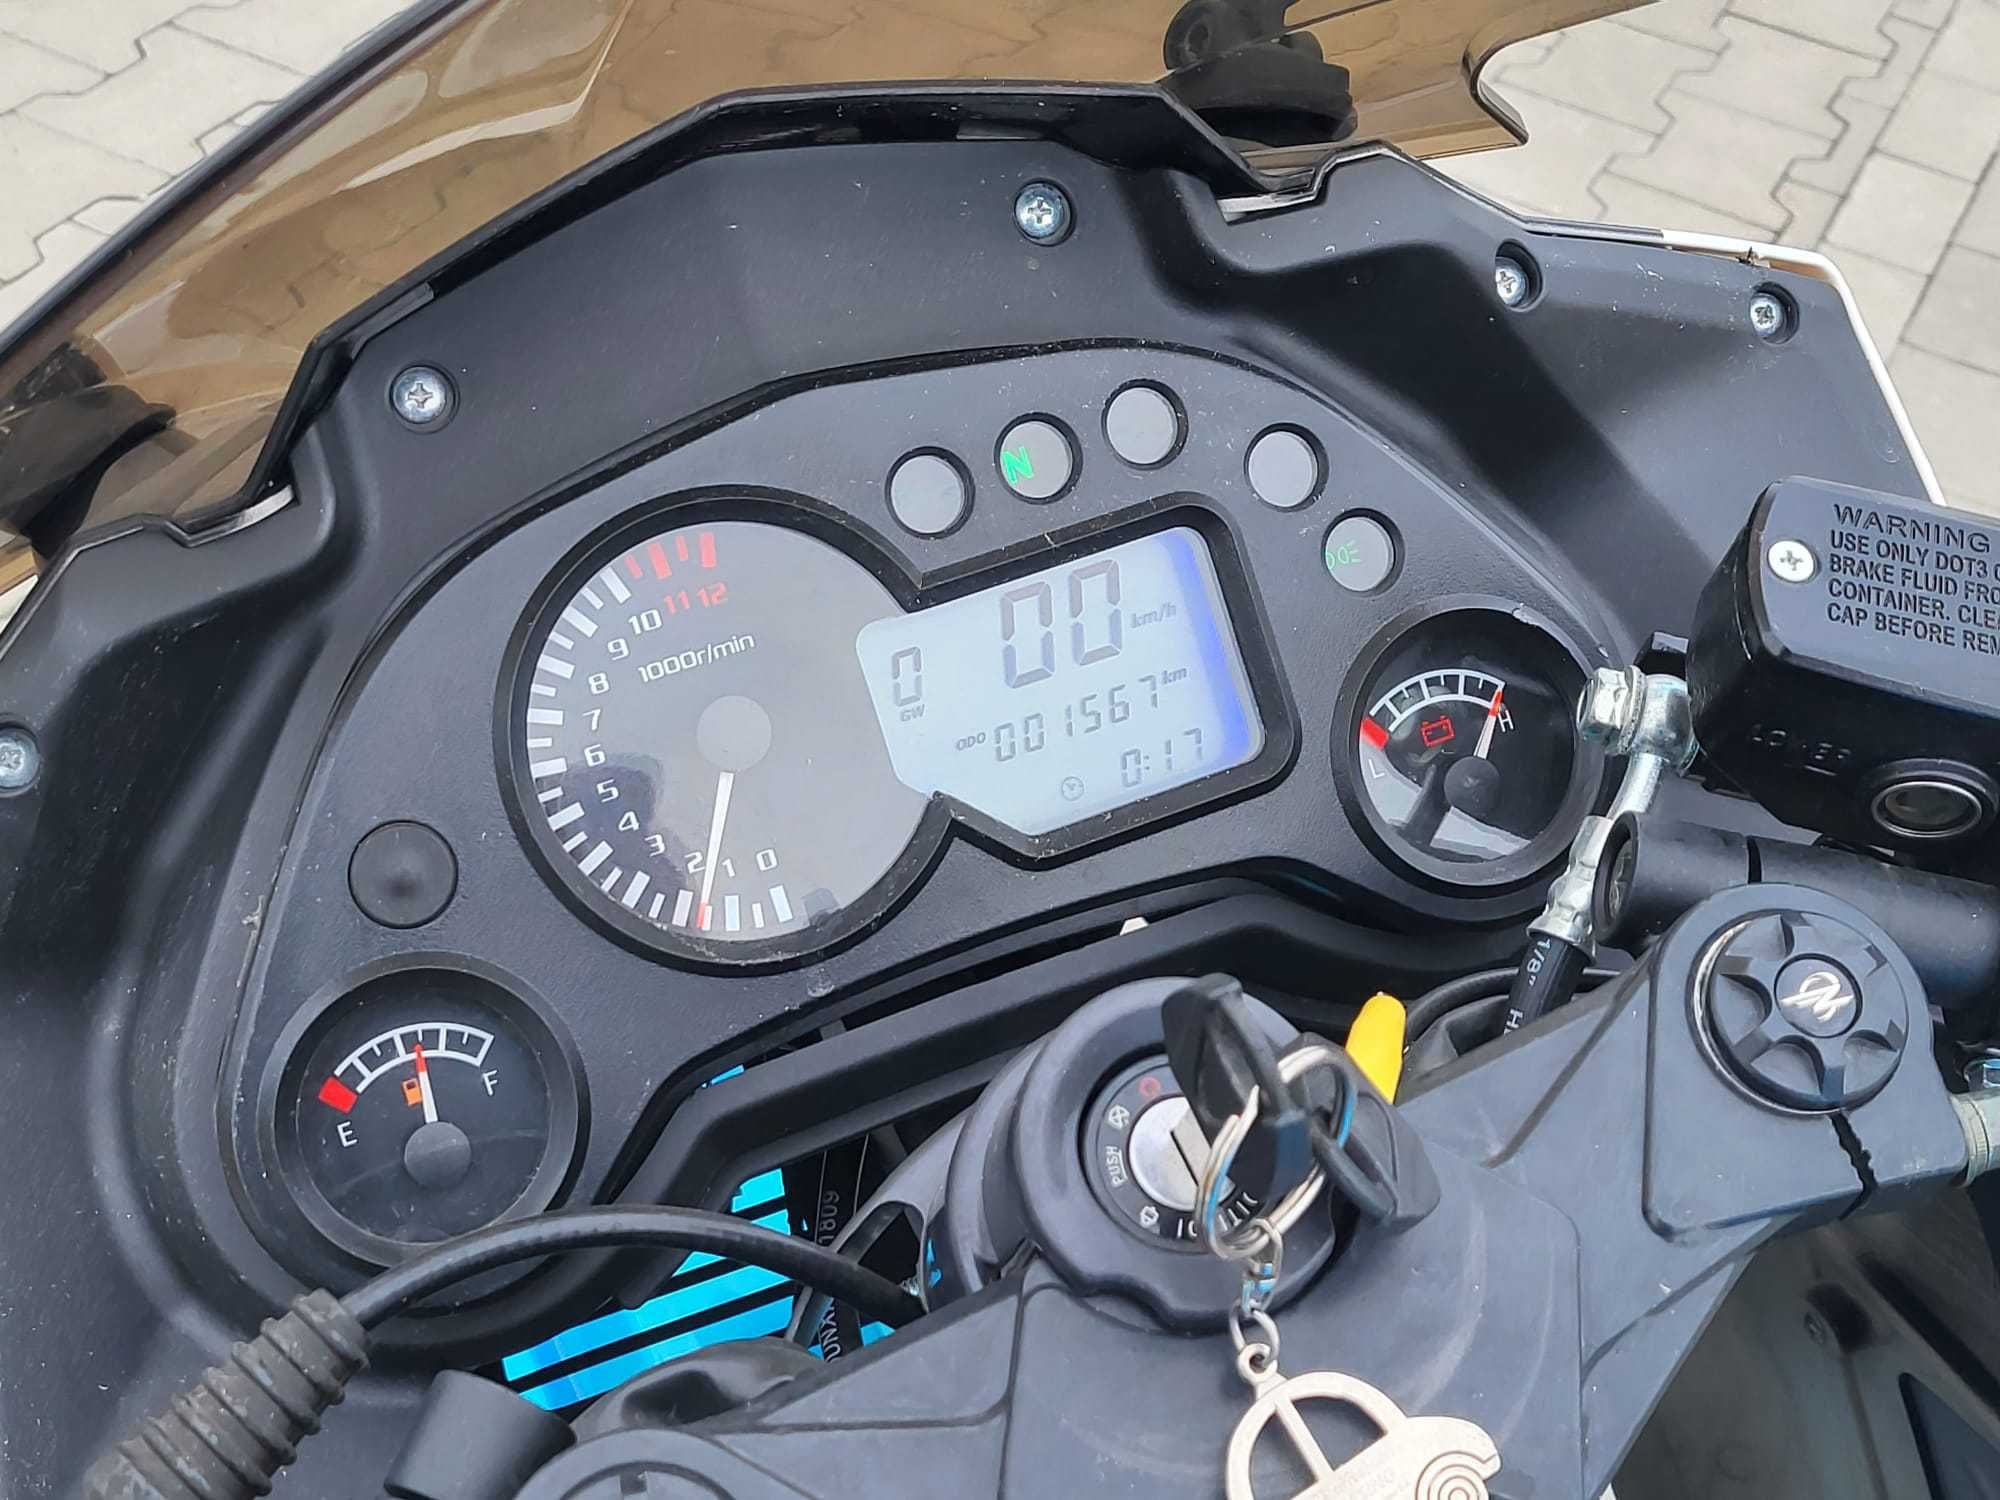 Motocykl Zipp Pro XT 125 cc , Raty , Dostawa